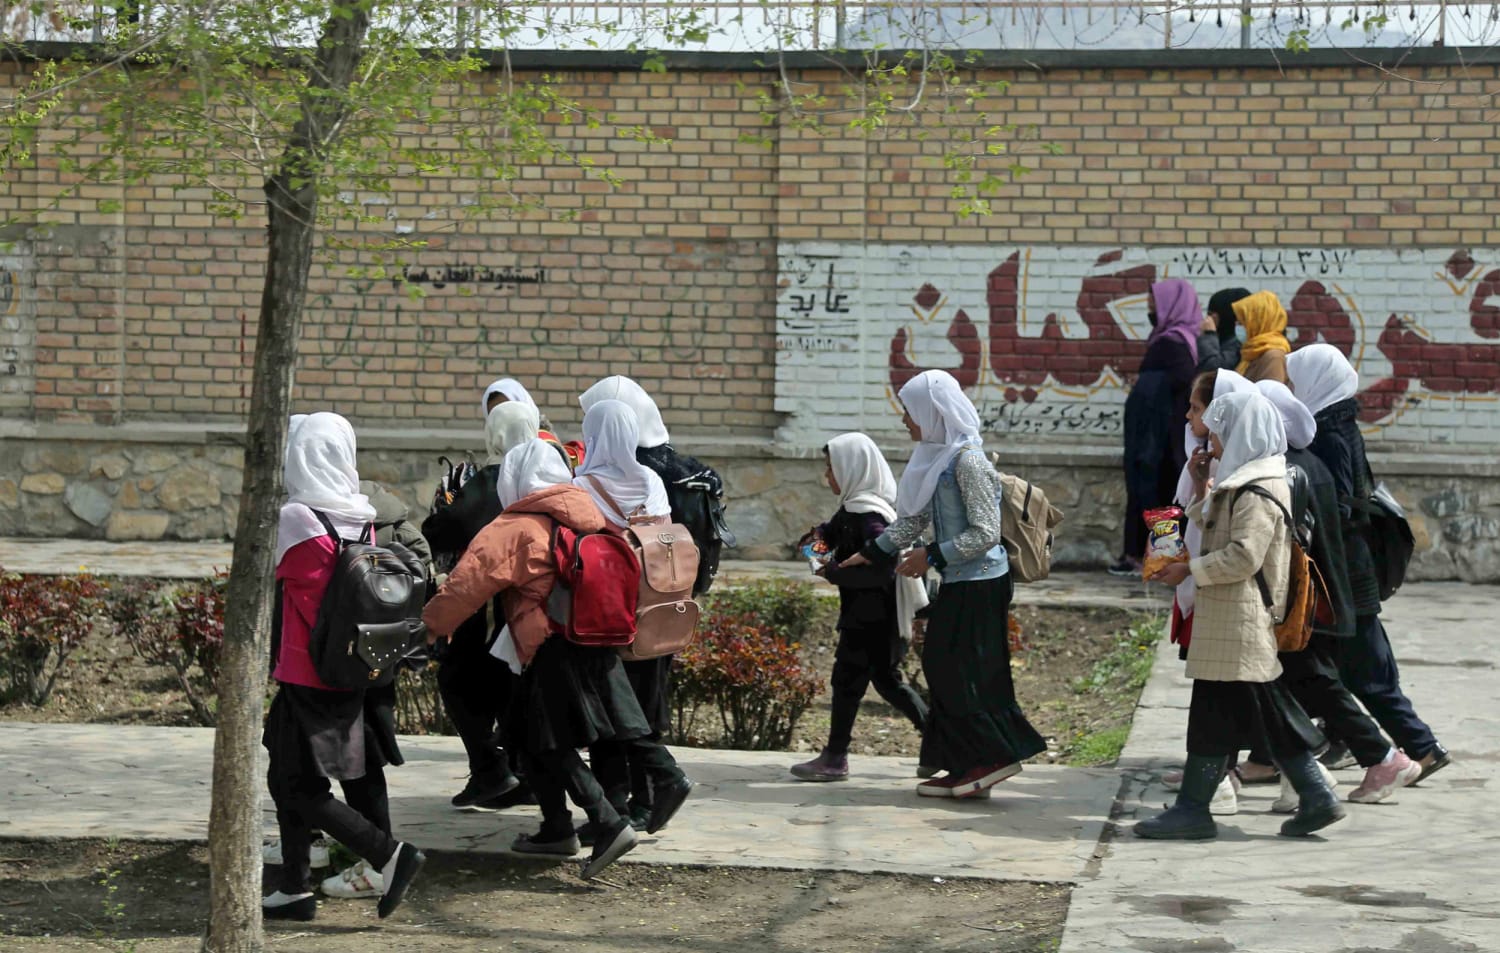 Amatpersona sacīja, ka Afganistānā saindējušās un hospitalizētas gandrīz 80 skolnieces